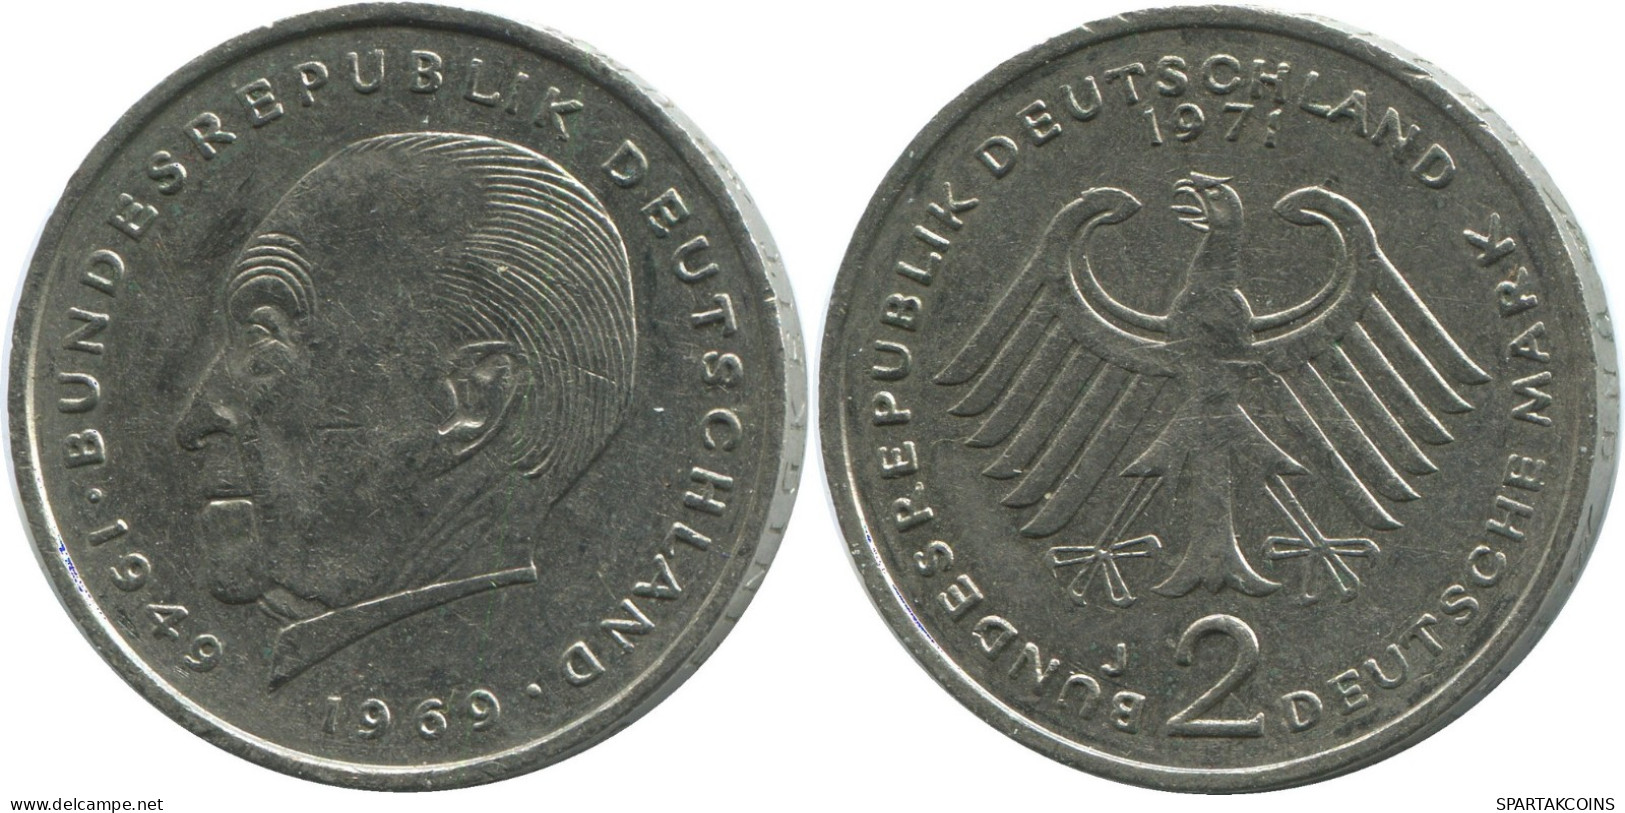 2 DM 1971 J BRD ALEMANIA Moneda GERMANY #DE10381.5.E.A - 2 Marcos